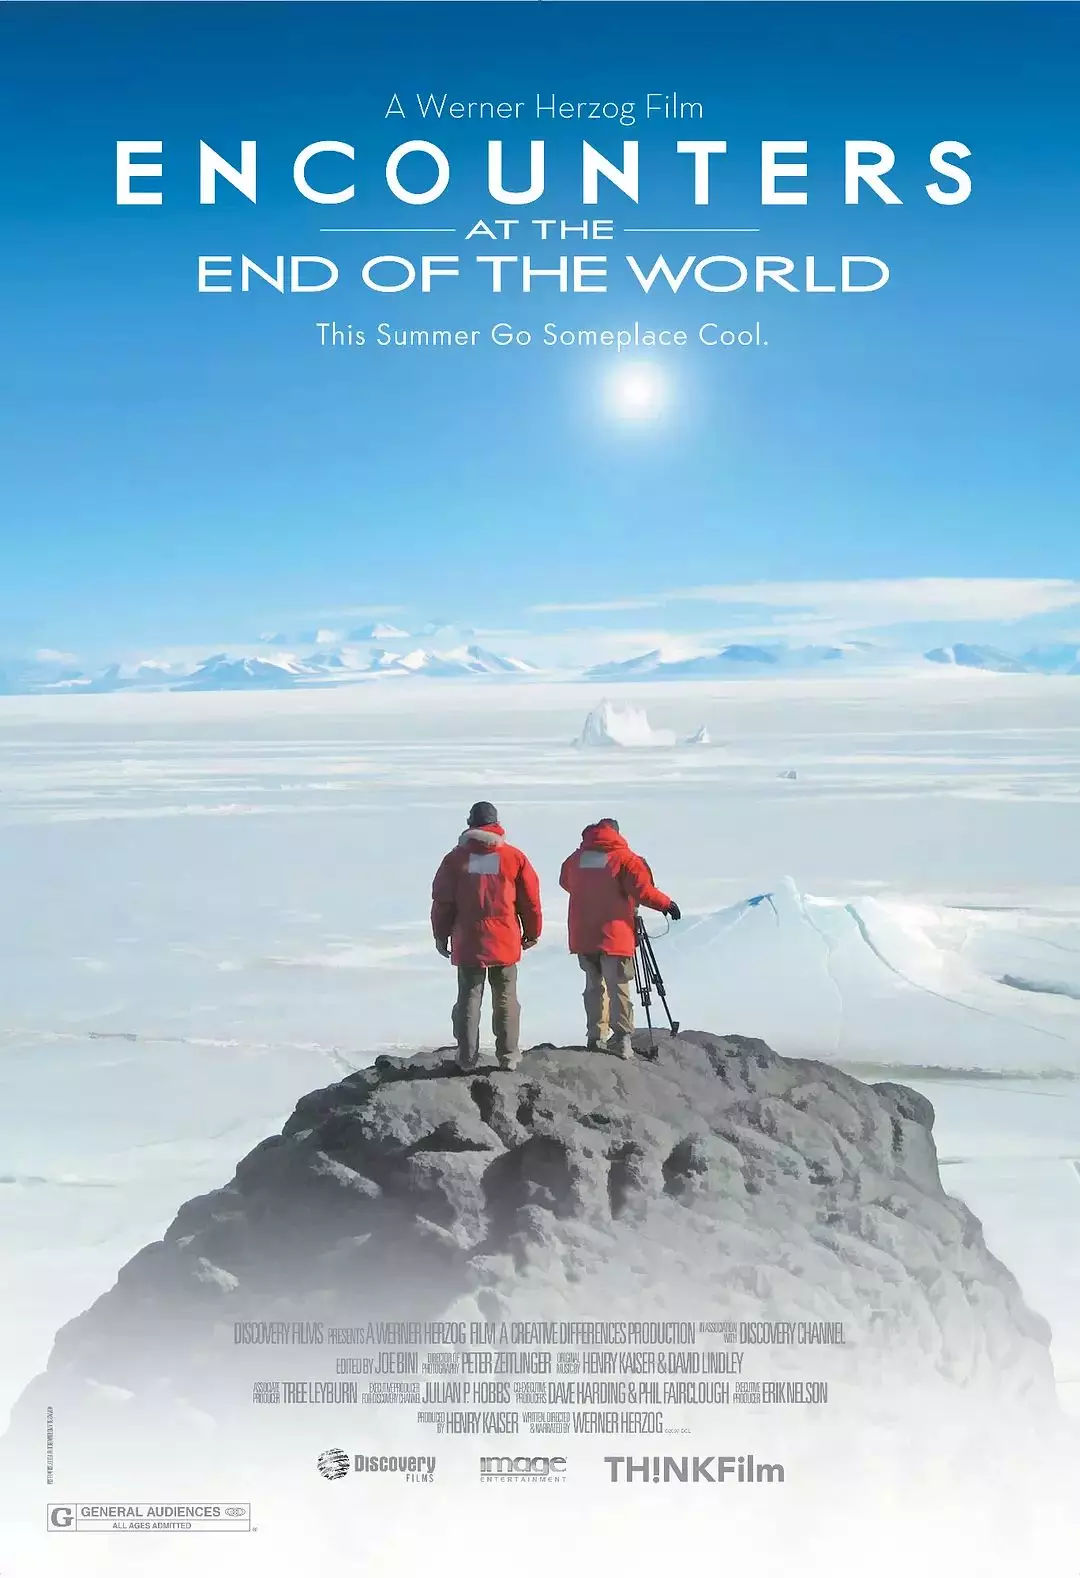 除《南极之恋》以外，还有哪些南极电影值得一看？